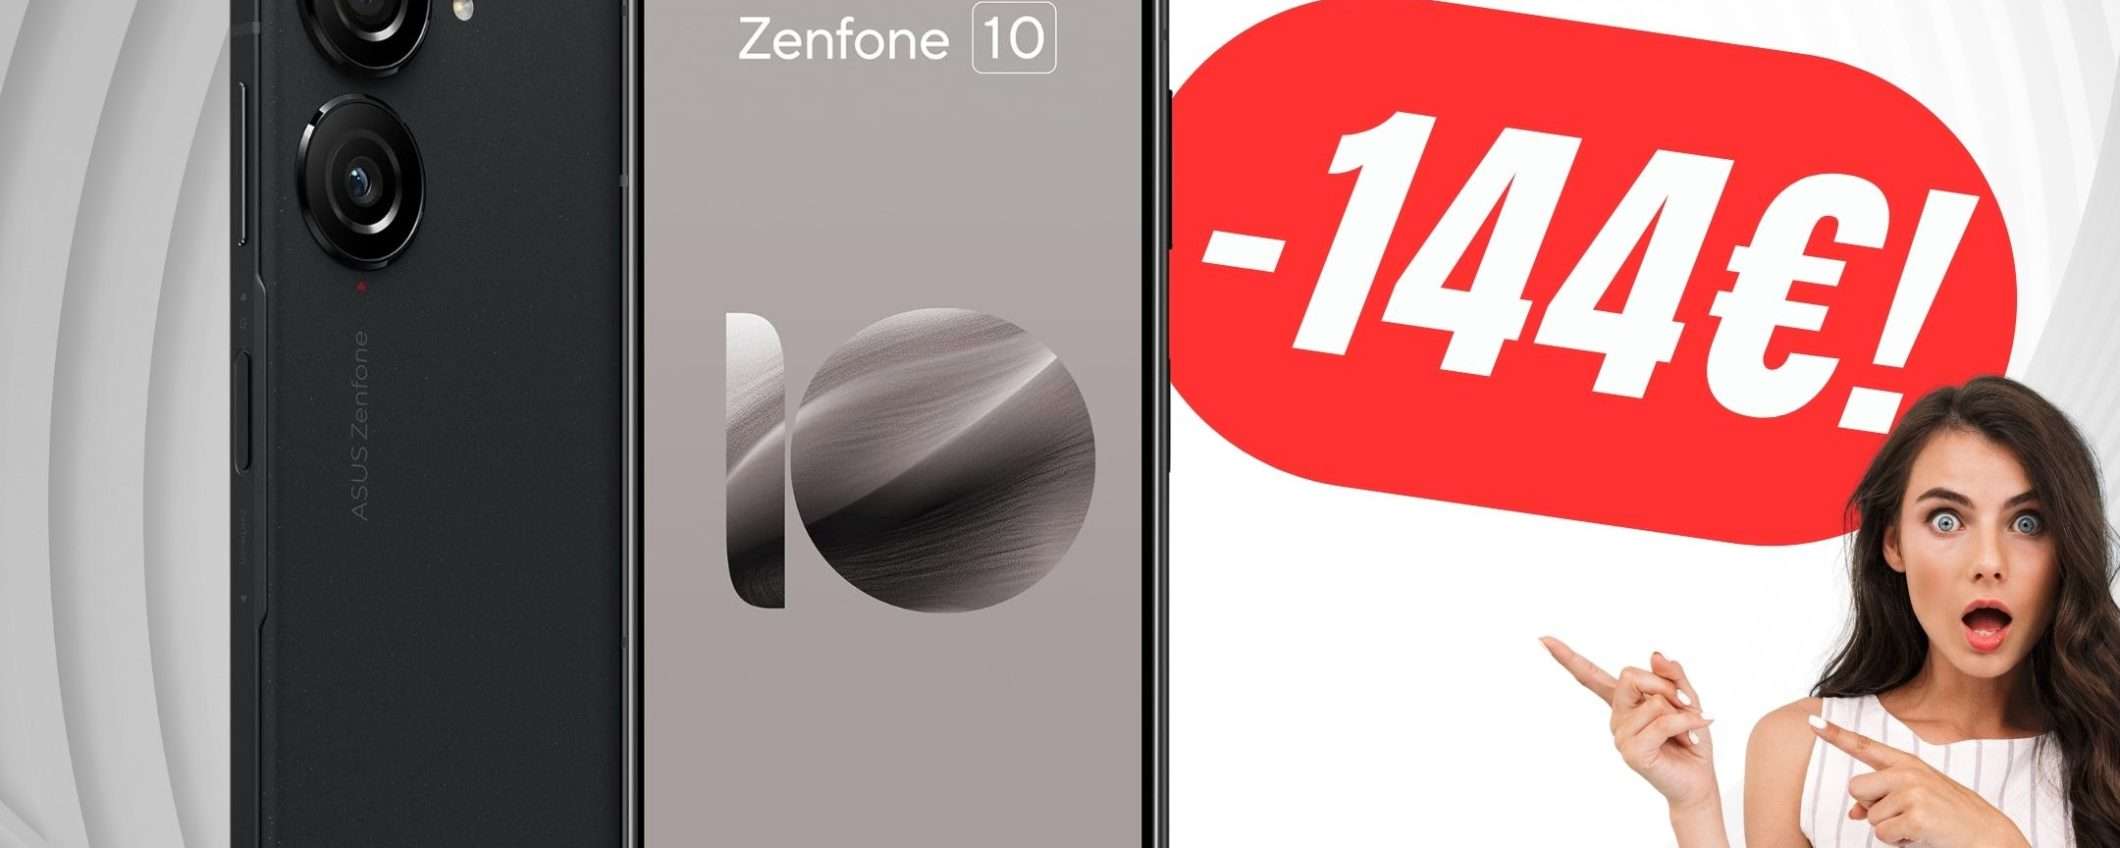 ASUS Zenfone 10 è scontato di ben 144€!